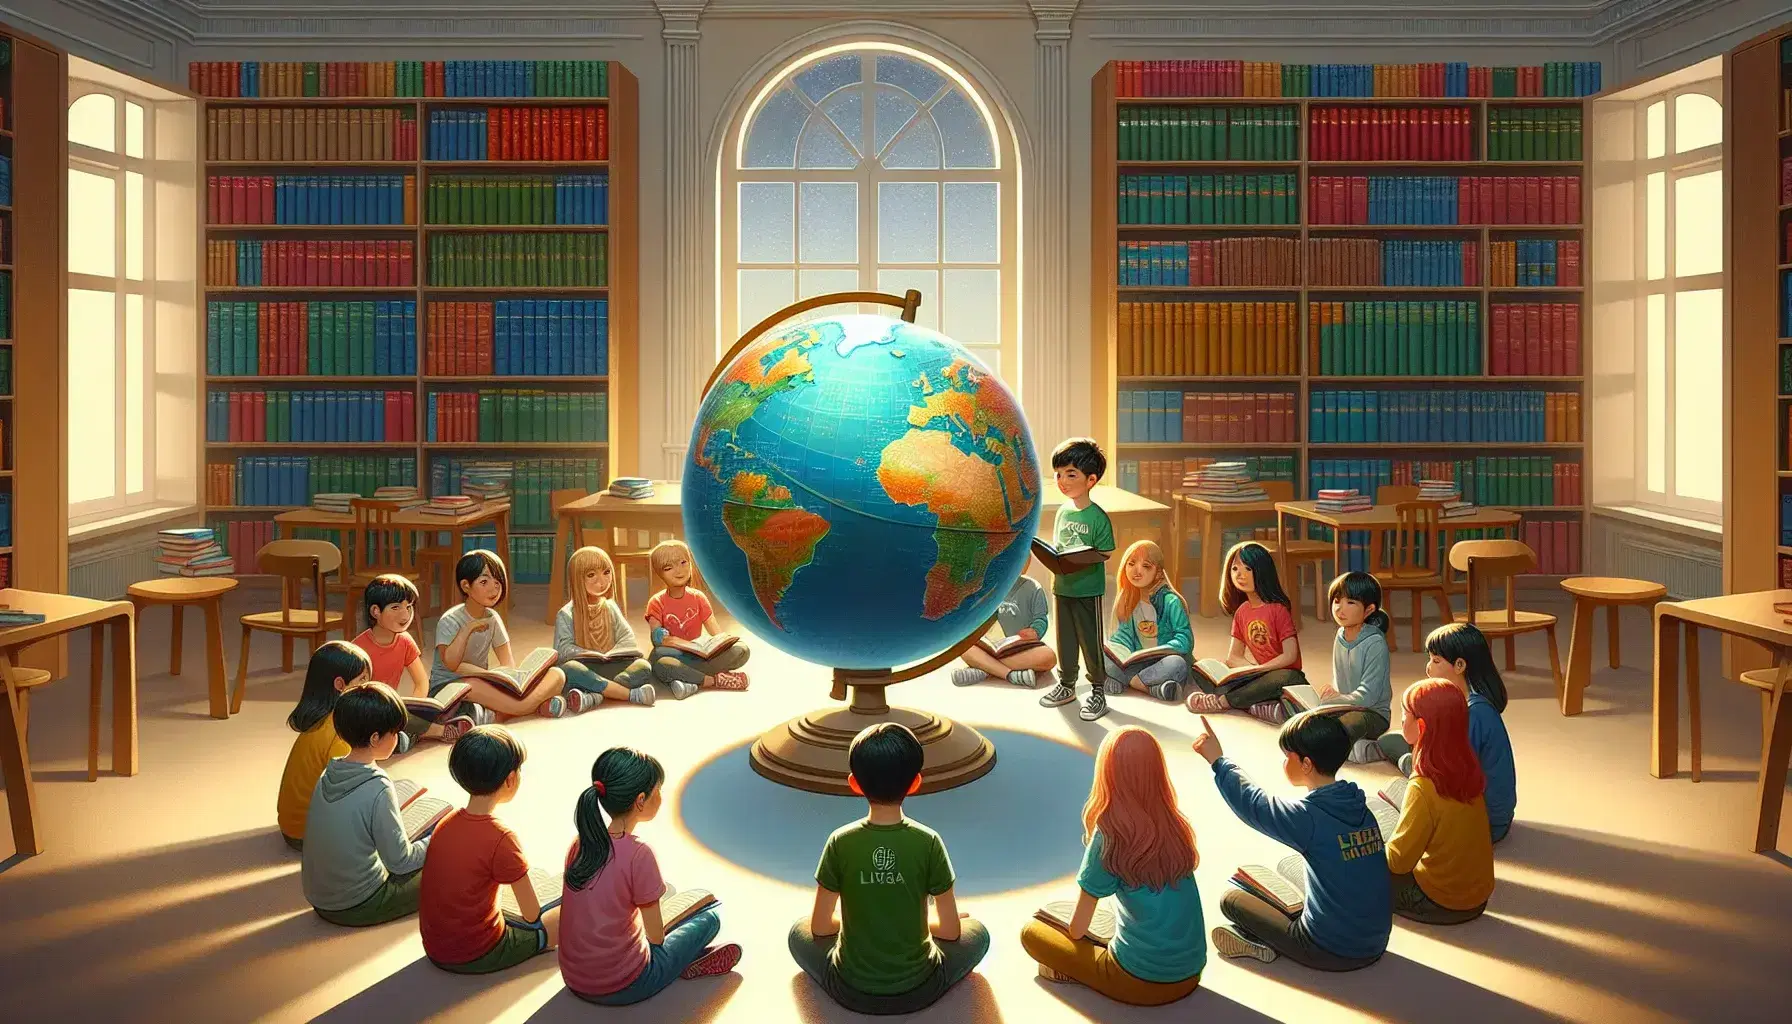 Estudiantes diversos sentados en semicírculo en biblioteca observan globo terráqueo, con estanterías de libros coloridos y luz natural entrando por ventana.